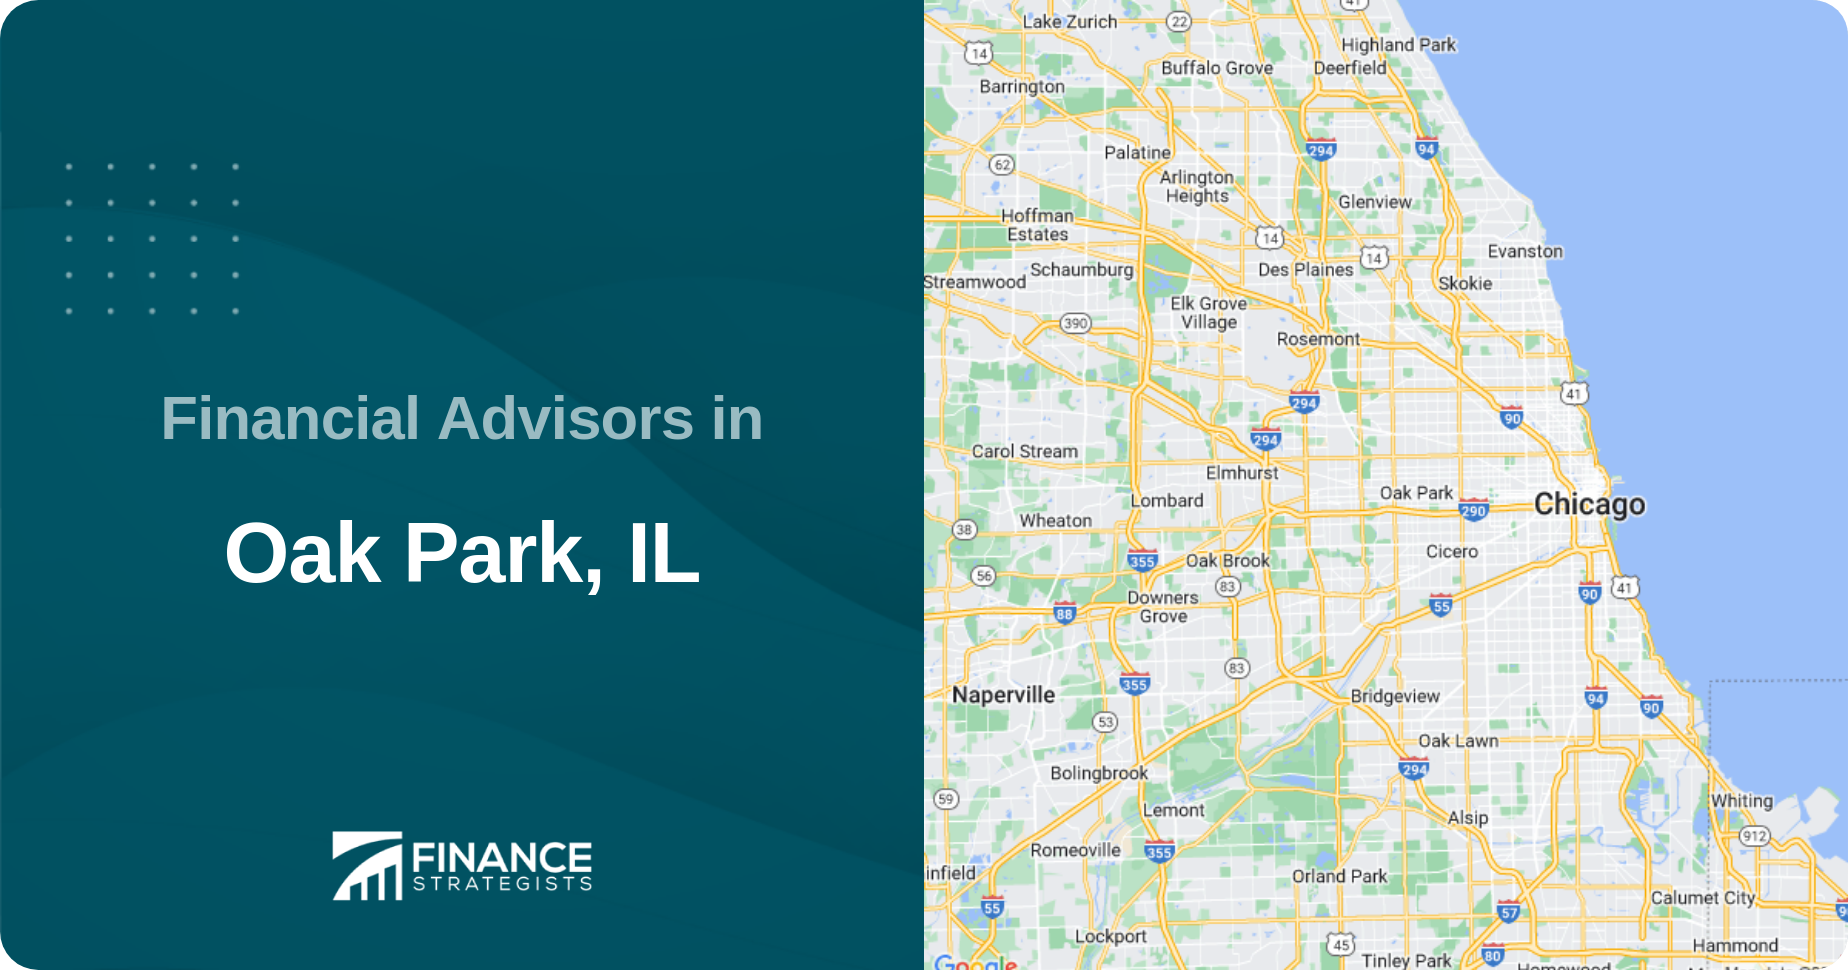 Financial Advisors in Oak Park, IL